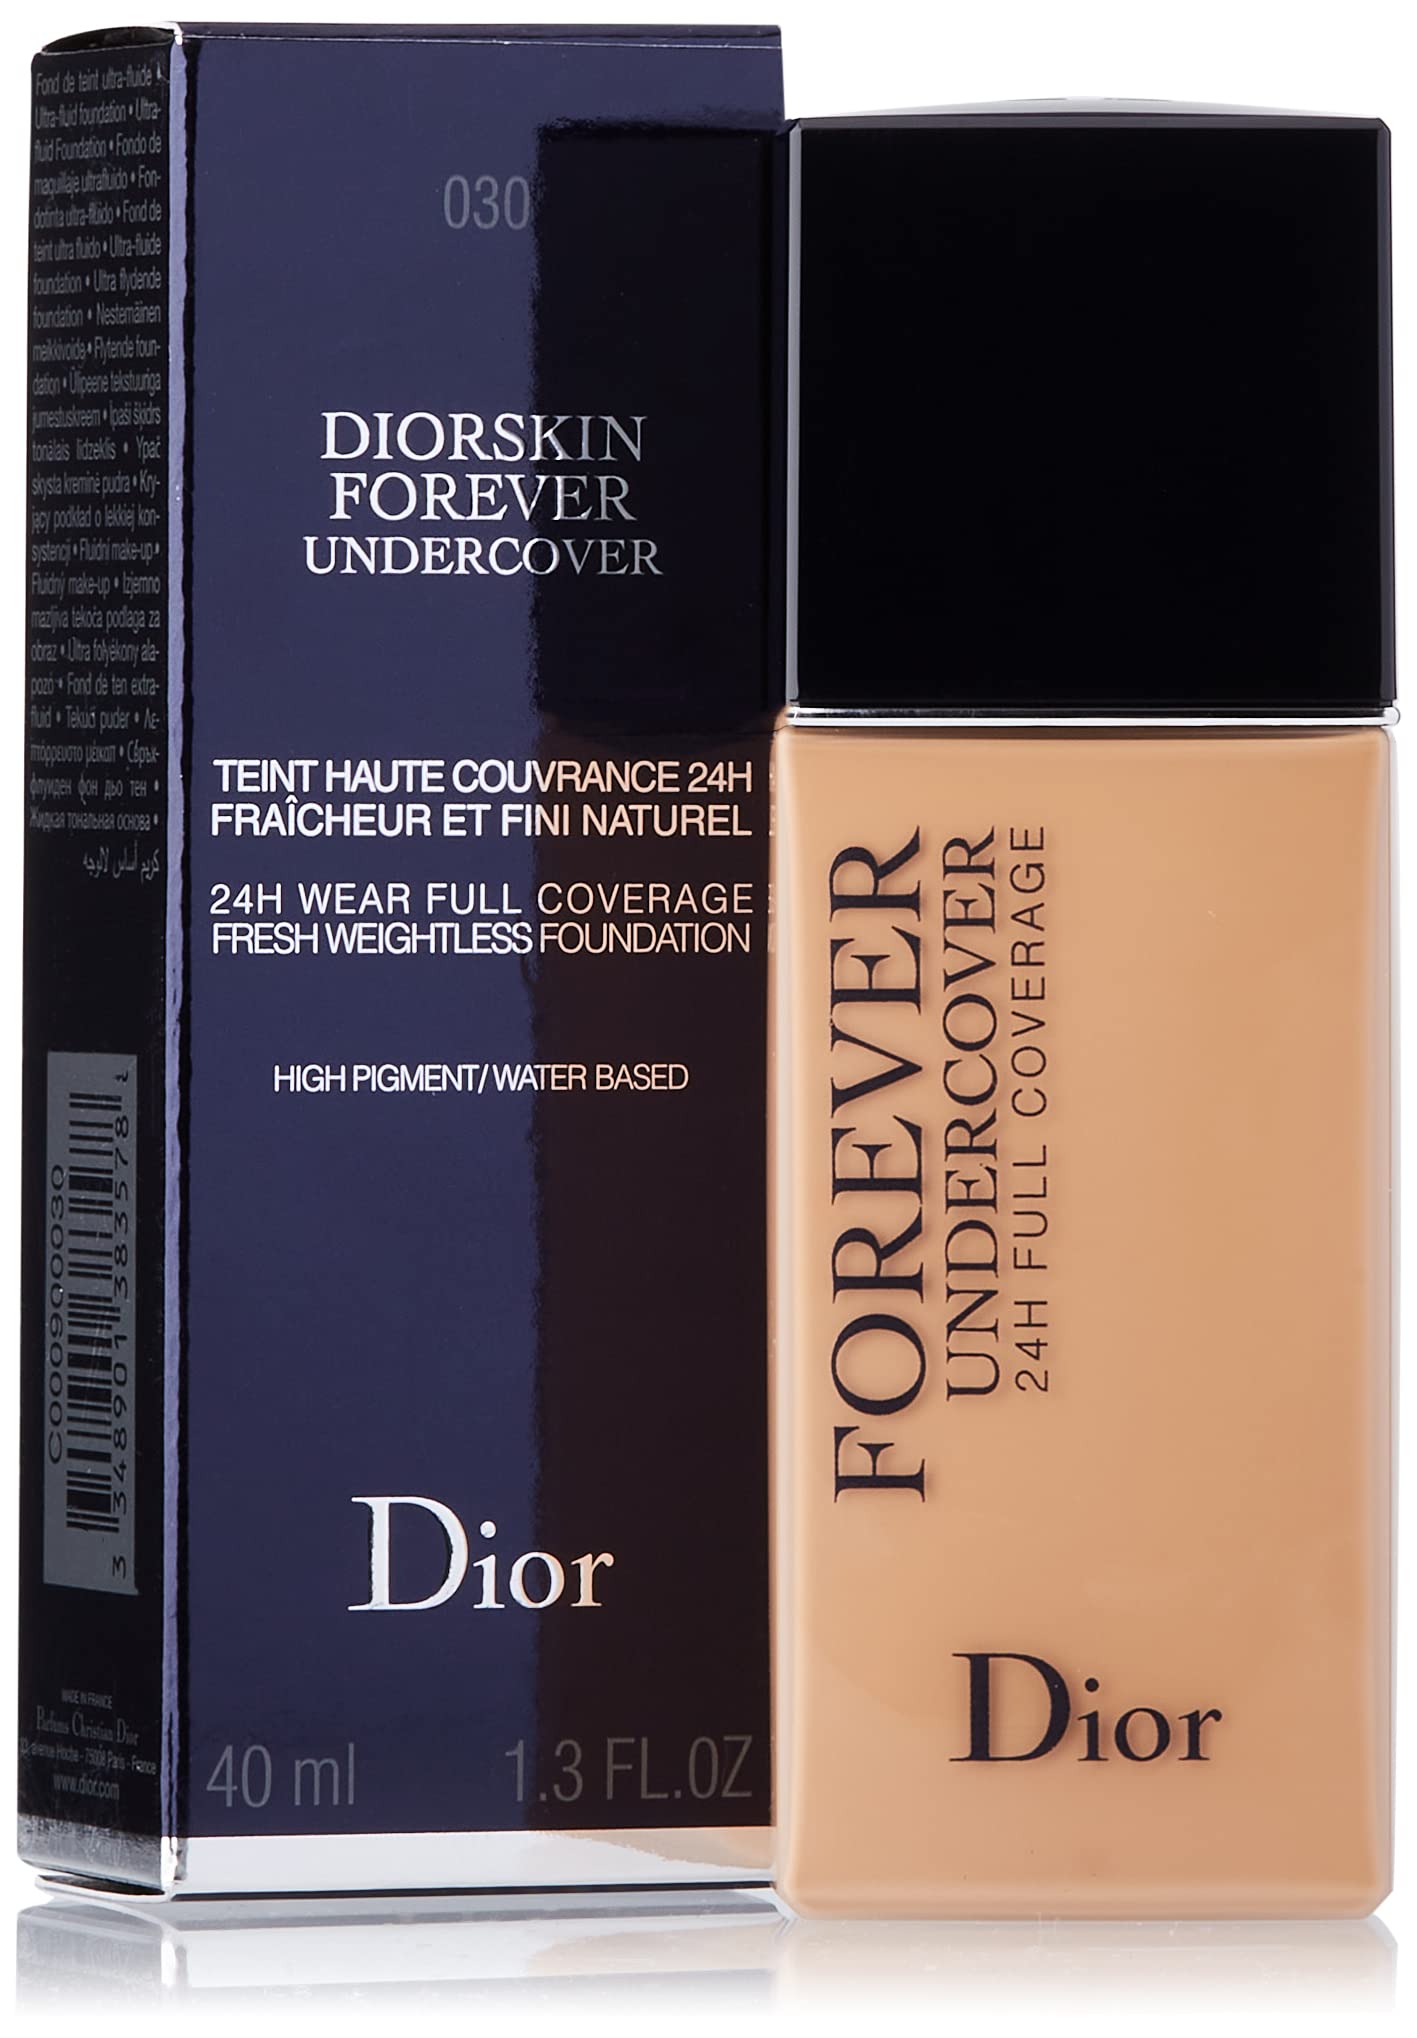 Mua Kem Nền Dior DiorSkin Forever Undercover Foundation Màu 010 40ml  Dior   Mua tại Vua Hàng Hiệu h026384